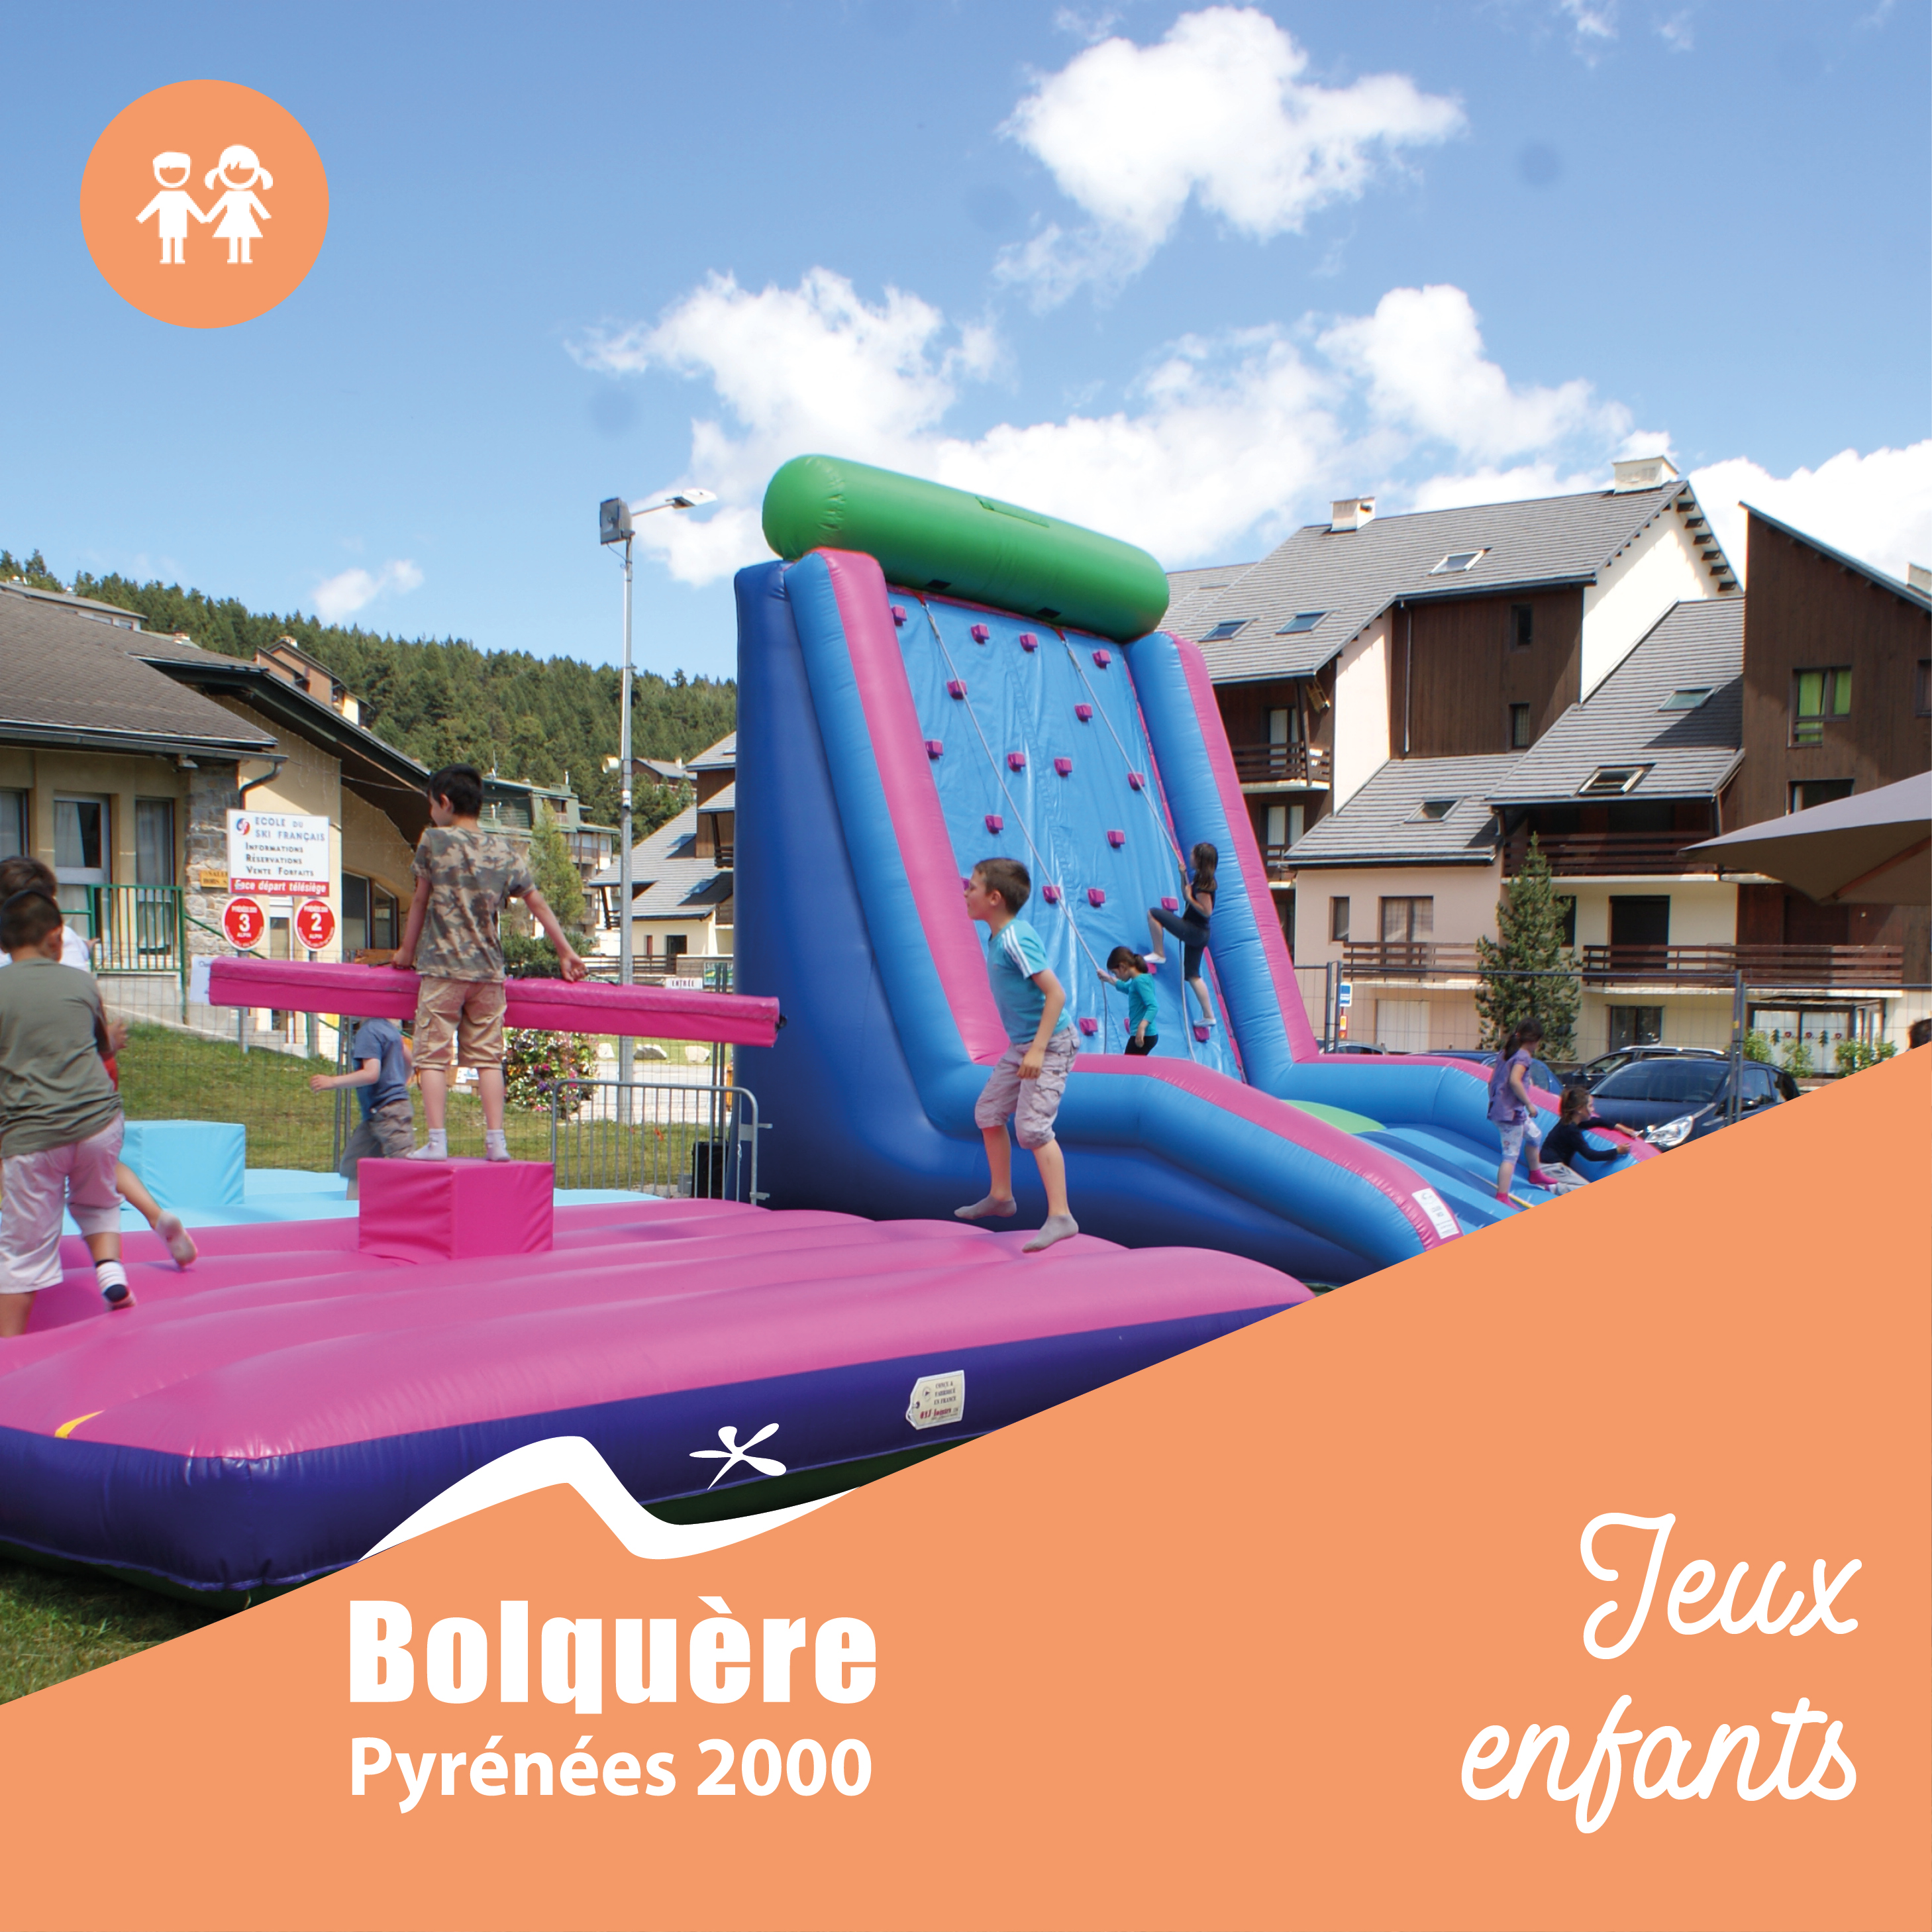 Nens village-OT Bolquère Pyrénées 2000